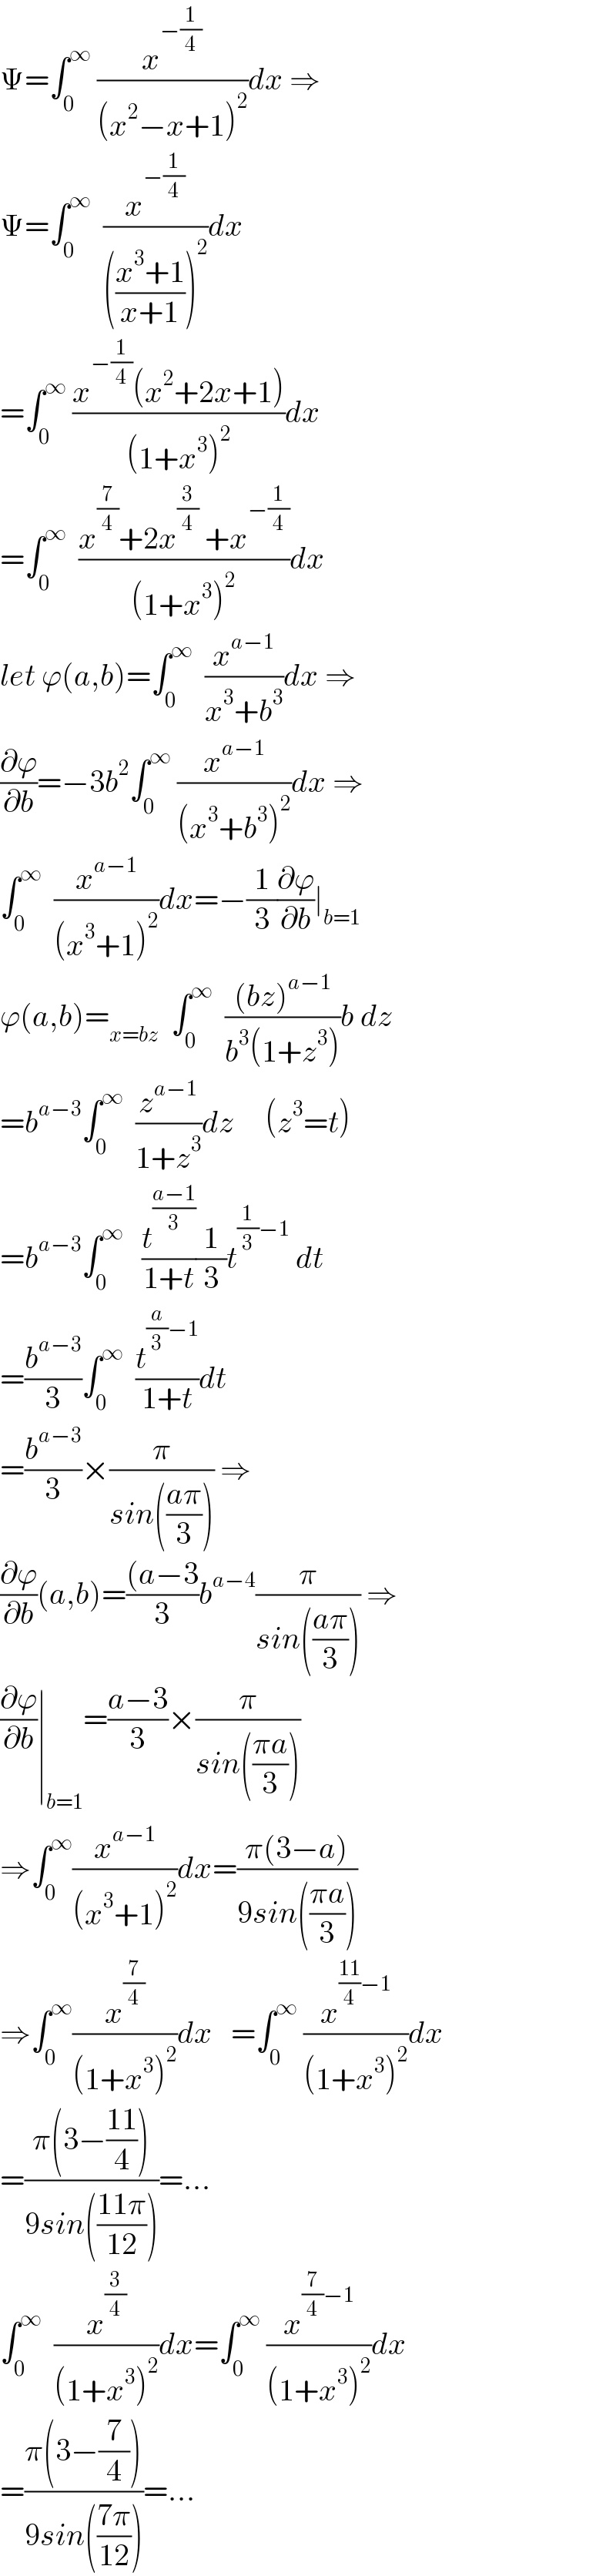 Ψ=∫_0 ^∞  (x^(−(1/4)) /((x^2 −x+1)^2 ))dx ⇒  Ψ=∫_0 ^∞   (x^(−(1/4)) /((((x^3 +1)/(x+1)))^2 ))dx  =∫_0 ^∞  ((x^(−(1/4)) (x^2 +2x+1))/((1+x^3 )^2 ))dx  =∫_0 ^∞   ((x^(7/4) +2x^(3/4)  +x^(−(1/4)) )/((1+x^3 )^2 ))dx  let ϕ(a,b)=∫_0 ^∞   (x^(a−1) /(x^3 +b^3 ))dx ⇒  (∂ϕ/∂b)=−3b^2 ∫_0 ^∞  (x^(a−1) /((x^3 +b^3 )^2 ))dx ⇒  ∫_0 ^∞   (x^(a−1) /((x^3 +1)^2 ))dx=−(1/3)(∂ϕ/∂b)∣_(b=1)   ϕ(a,b)=_(x=bz)   ∫_0 ^∞   (((bz)^(a−1) )/(b^3 (1+z^3 )))b dz  =b^(a−3) ∫_0 ^∞   (z^(a−1) /(1+z^3 ))dz     (z^3 =t)  =b^(a−3) ∫_0 ^∞    (t^((a−1)/3) /(1+t))(1/3)t^((1/3)−1)  dt  =(b^(a−3) /3)∫_0 ^∞   (t^((a/3)−1) /(1+t))dt  =(b^(a−3) /3)×(π/(sin(((aπ)/3)))) ⇒  (∂ϕ/∂b)(a,b)=(((a−3)/3)b^(a−4) (π/(sin(((aπ)/3)))) ⇒  (∂ϕ/∂b)∣_(b=1) =((a−3)/3)×(π/(sin(((πa)/3))))  ⇒∫_0 ^∞ (x^(a−1) /((x^3 +1)^2 ))dx=((π(3−a))/(9sin(((πa)/3))))  ⇒∫_0 ^∞ (x^(7/4) /((1+x^3 )^2 ))dx   =∫_0 ^∞  (x^(((11)/4)−1) /((1+x^3 )^2 ))dx  =((π(3−((11)/4)))/(9sin(((11π)/(12)))))=...  ∫_0 ^∞   (x^(3/4) /((1+x^3 )^2 ))dx=∫_0 ^∞  (x^((7/4)−1) /((1+x^3 )^2 ))dx  =((π(3−(7/4)))/(9sin(((7π)/(12)))))=...  